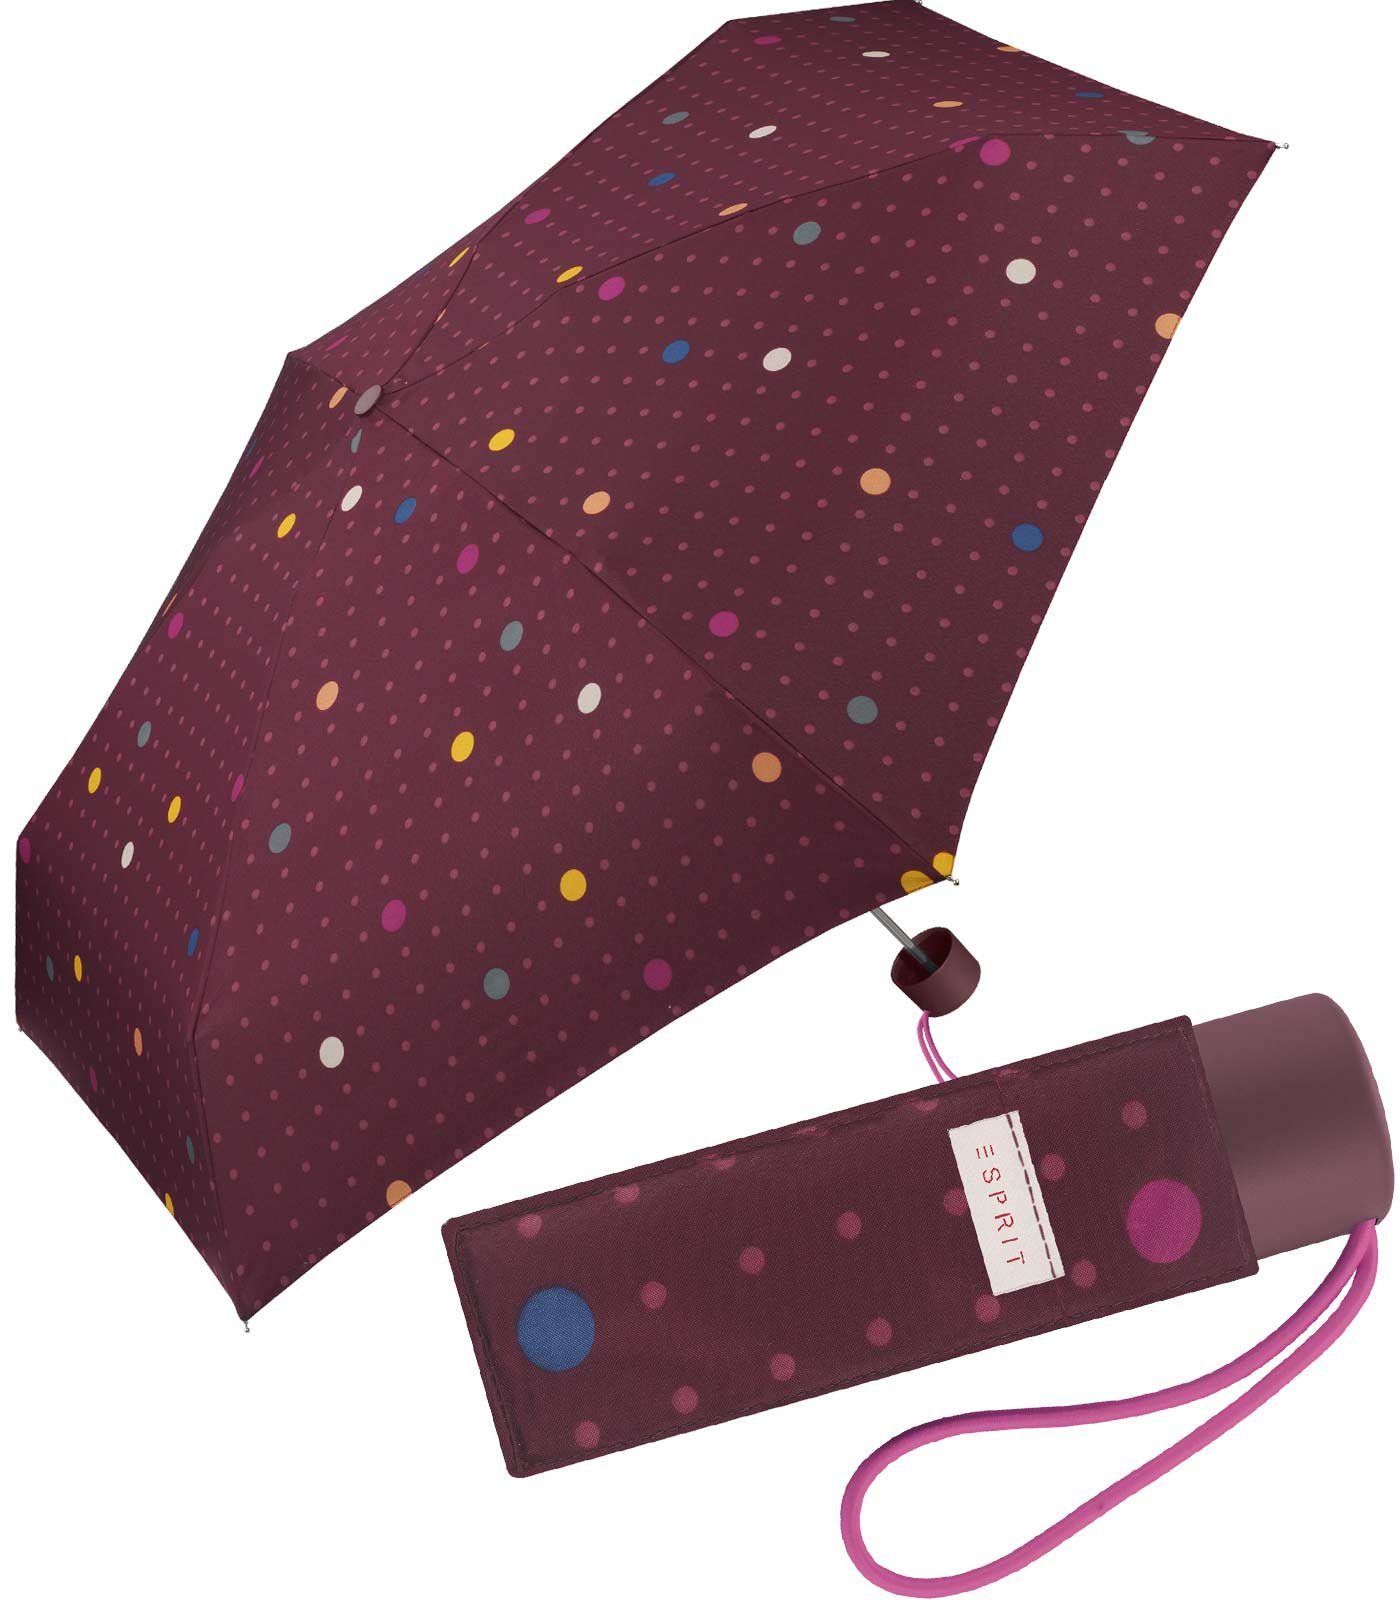 Esprit Taschenregenschirm kleiner, handlicher Schirm für Damen, stabil, leicht, mit jugendlichem Punkte-Muster bordeaux